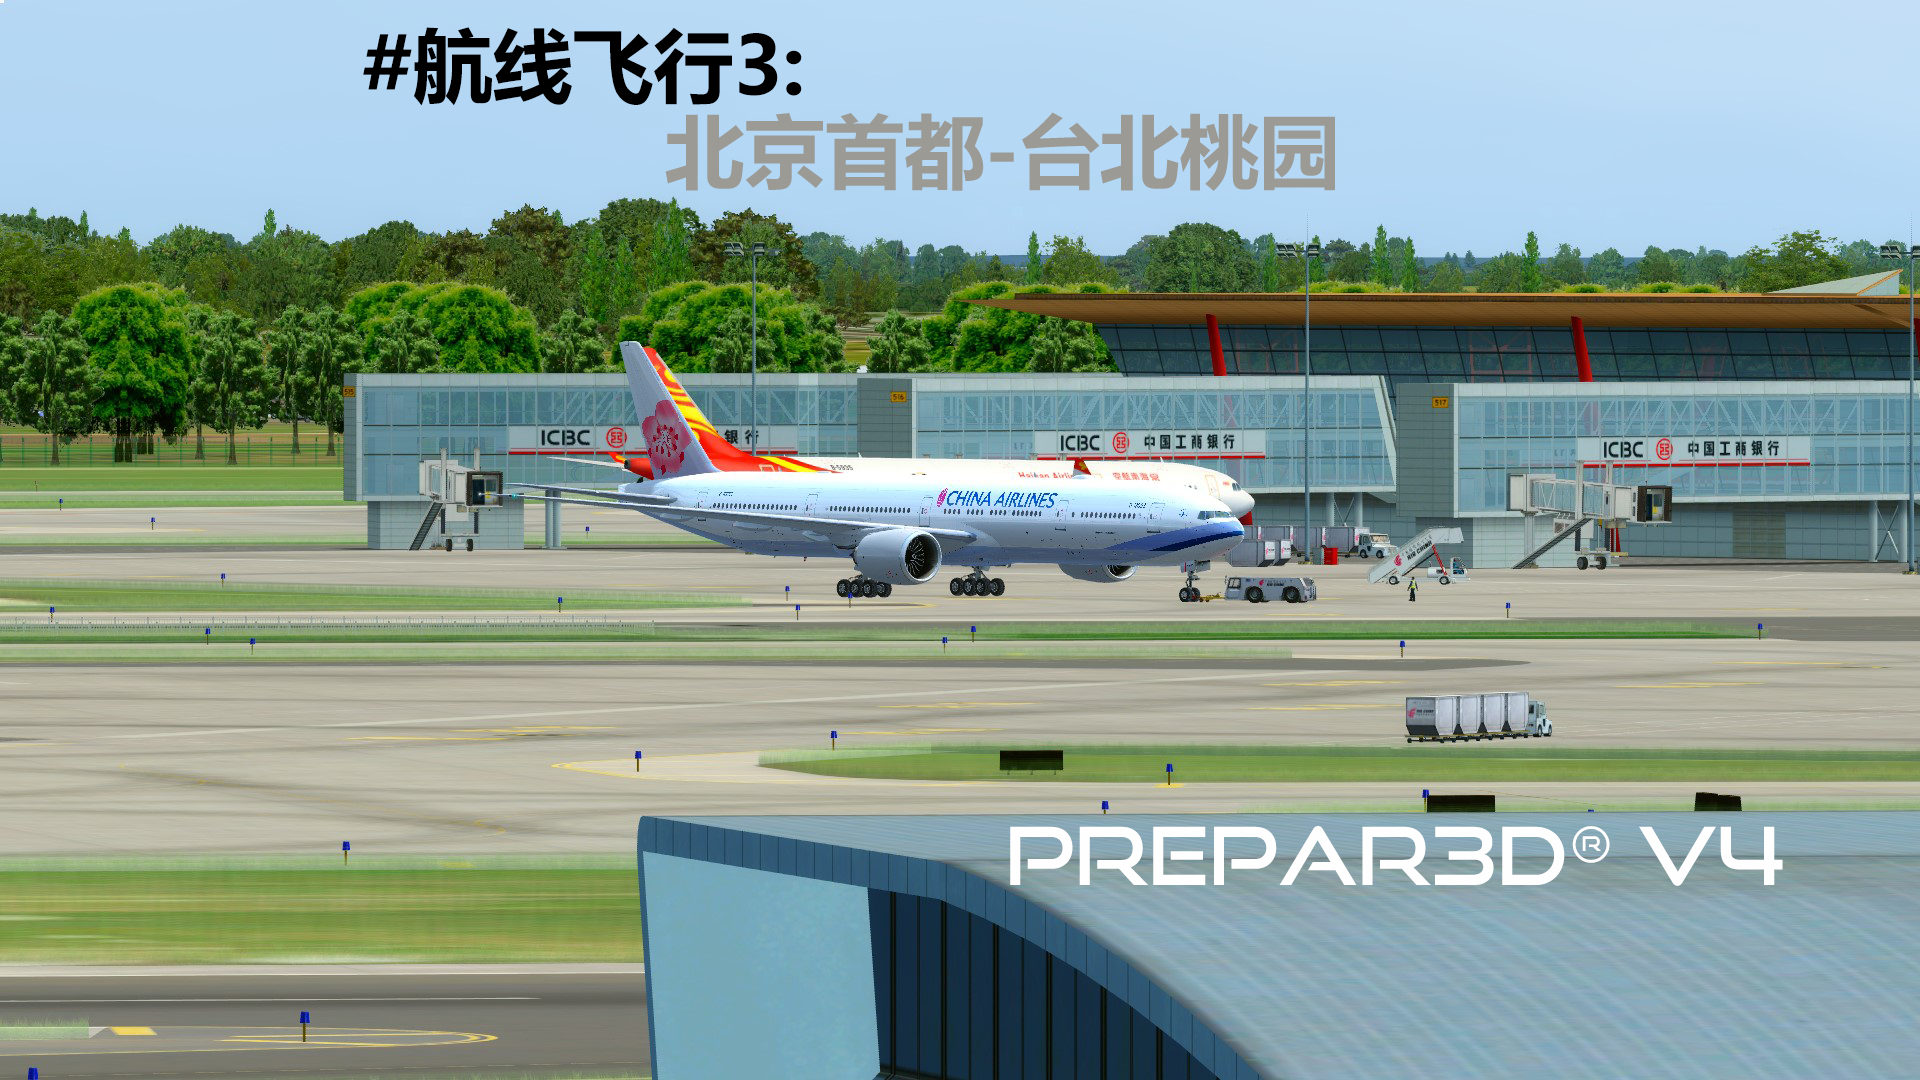 【Prepar3D v4】PMDG777 #航线飞行3：北京首都-台北桃园-937 